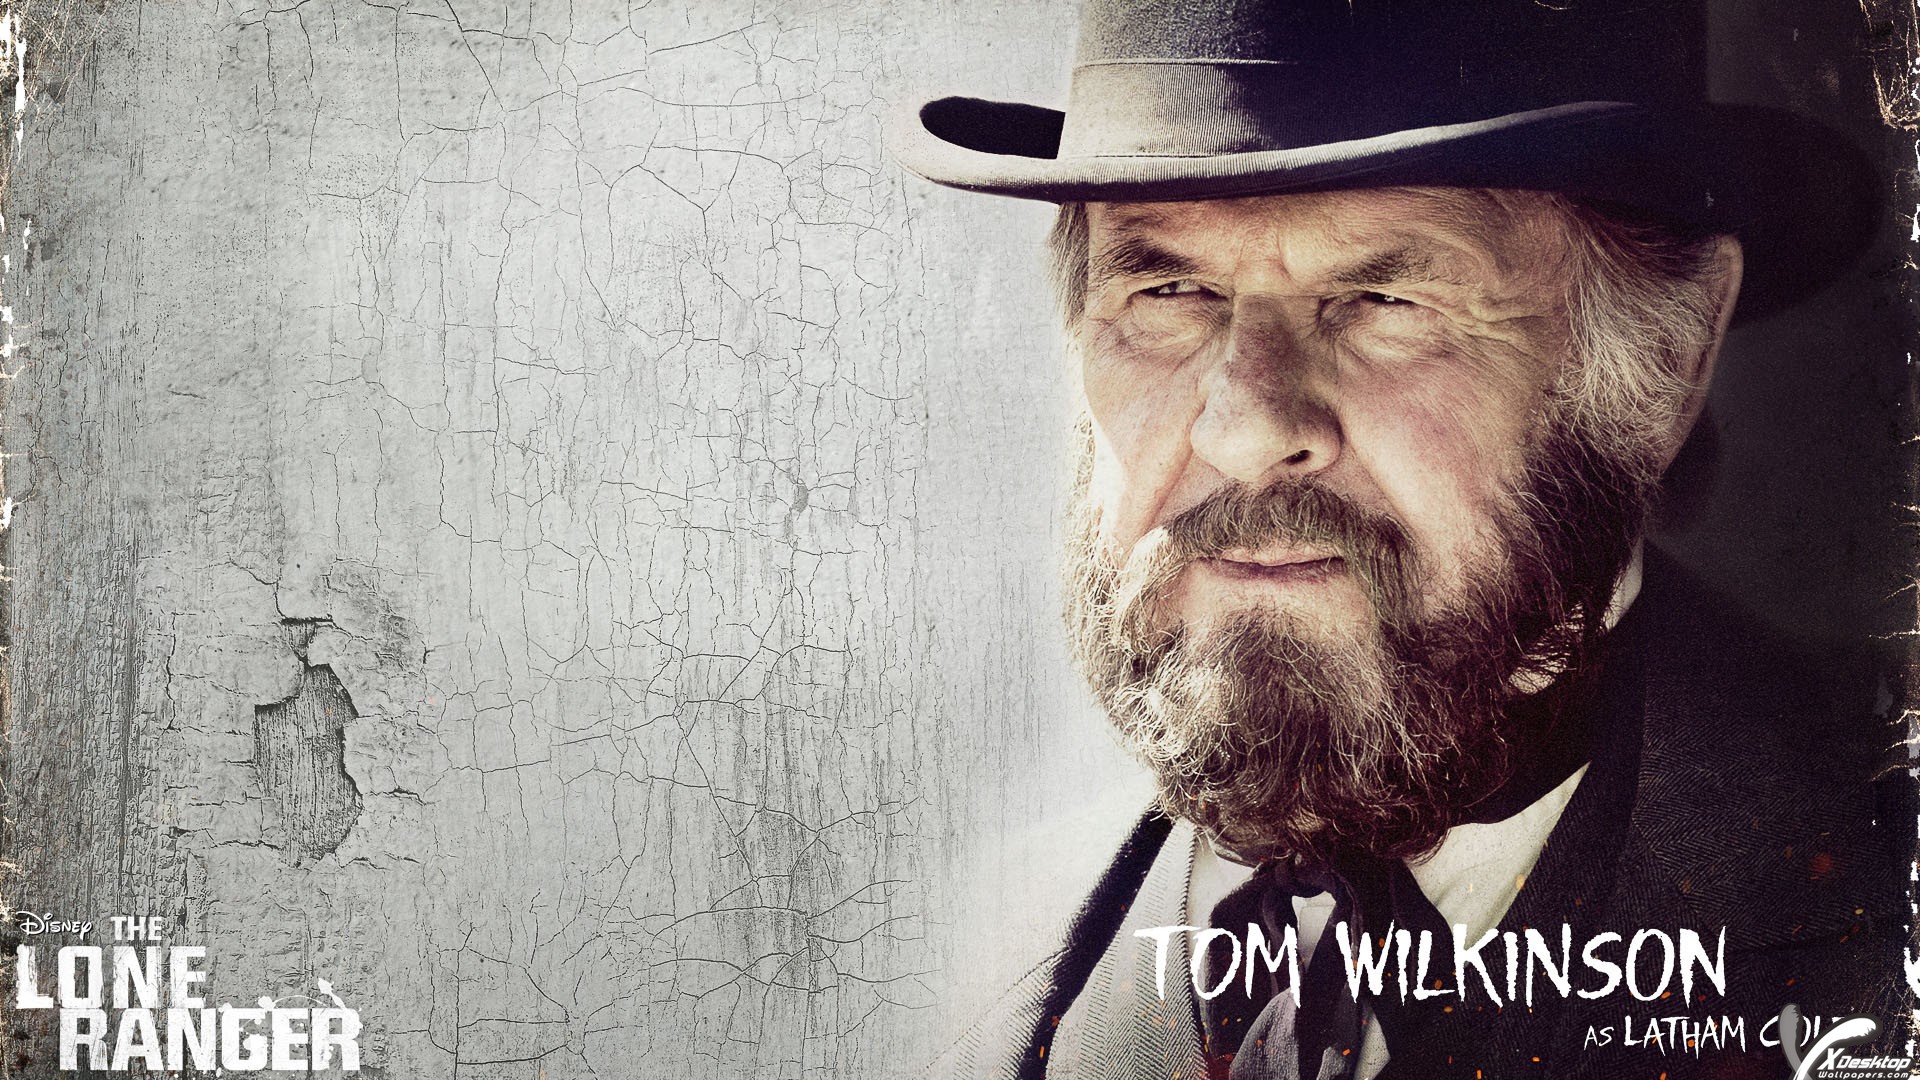 Tom Wilkinson In Balck Hat And Long Beard Wallpaper